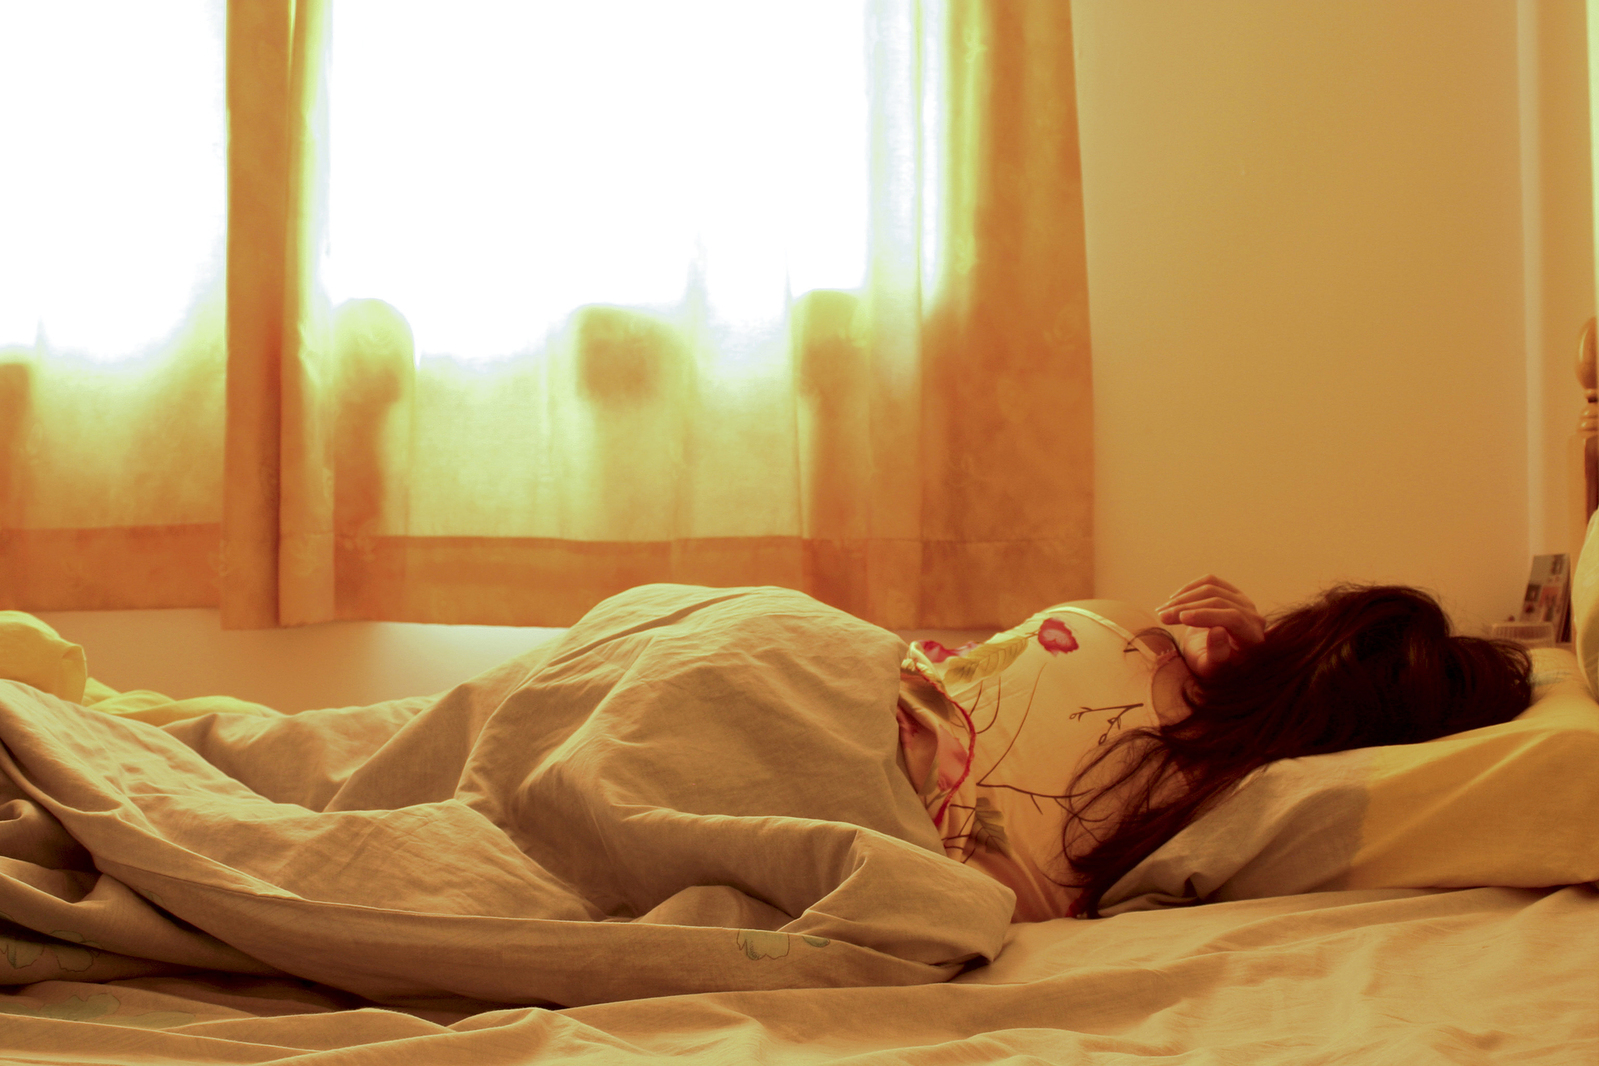 Рыженькая девушка с милым личиком дрочит киску в мягкой постели